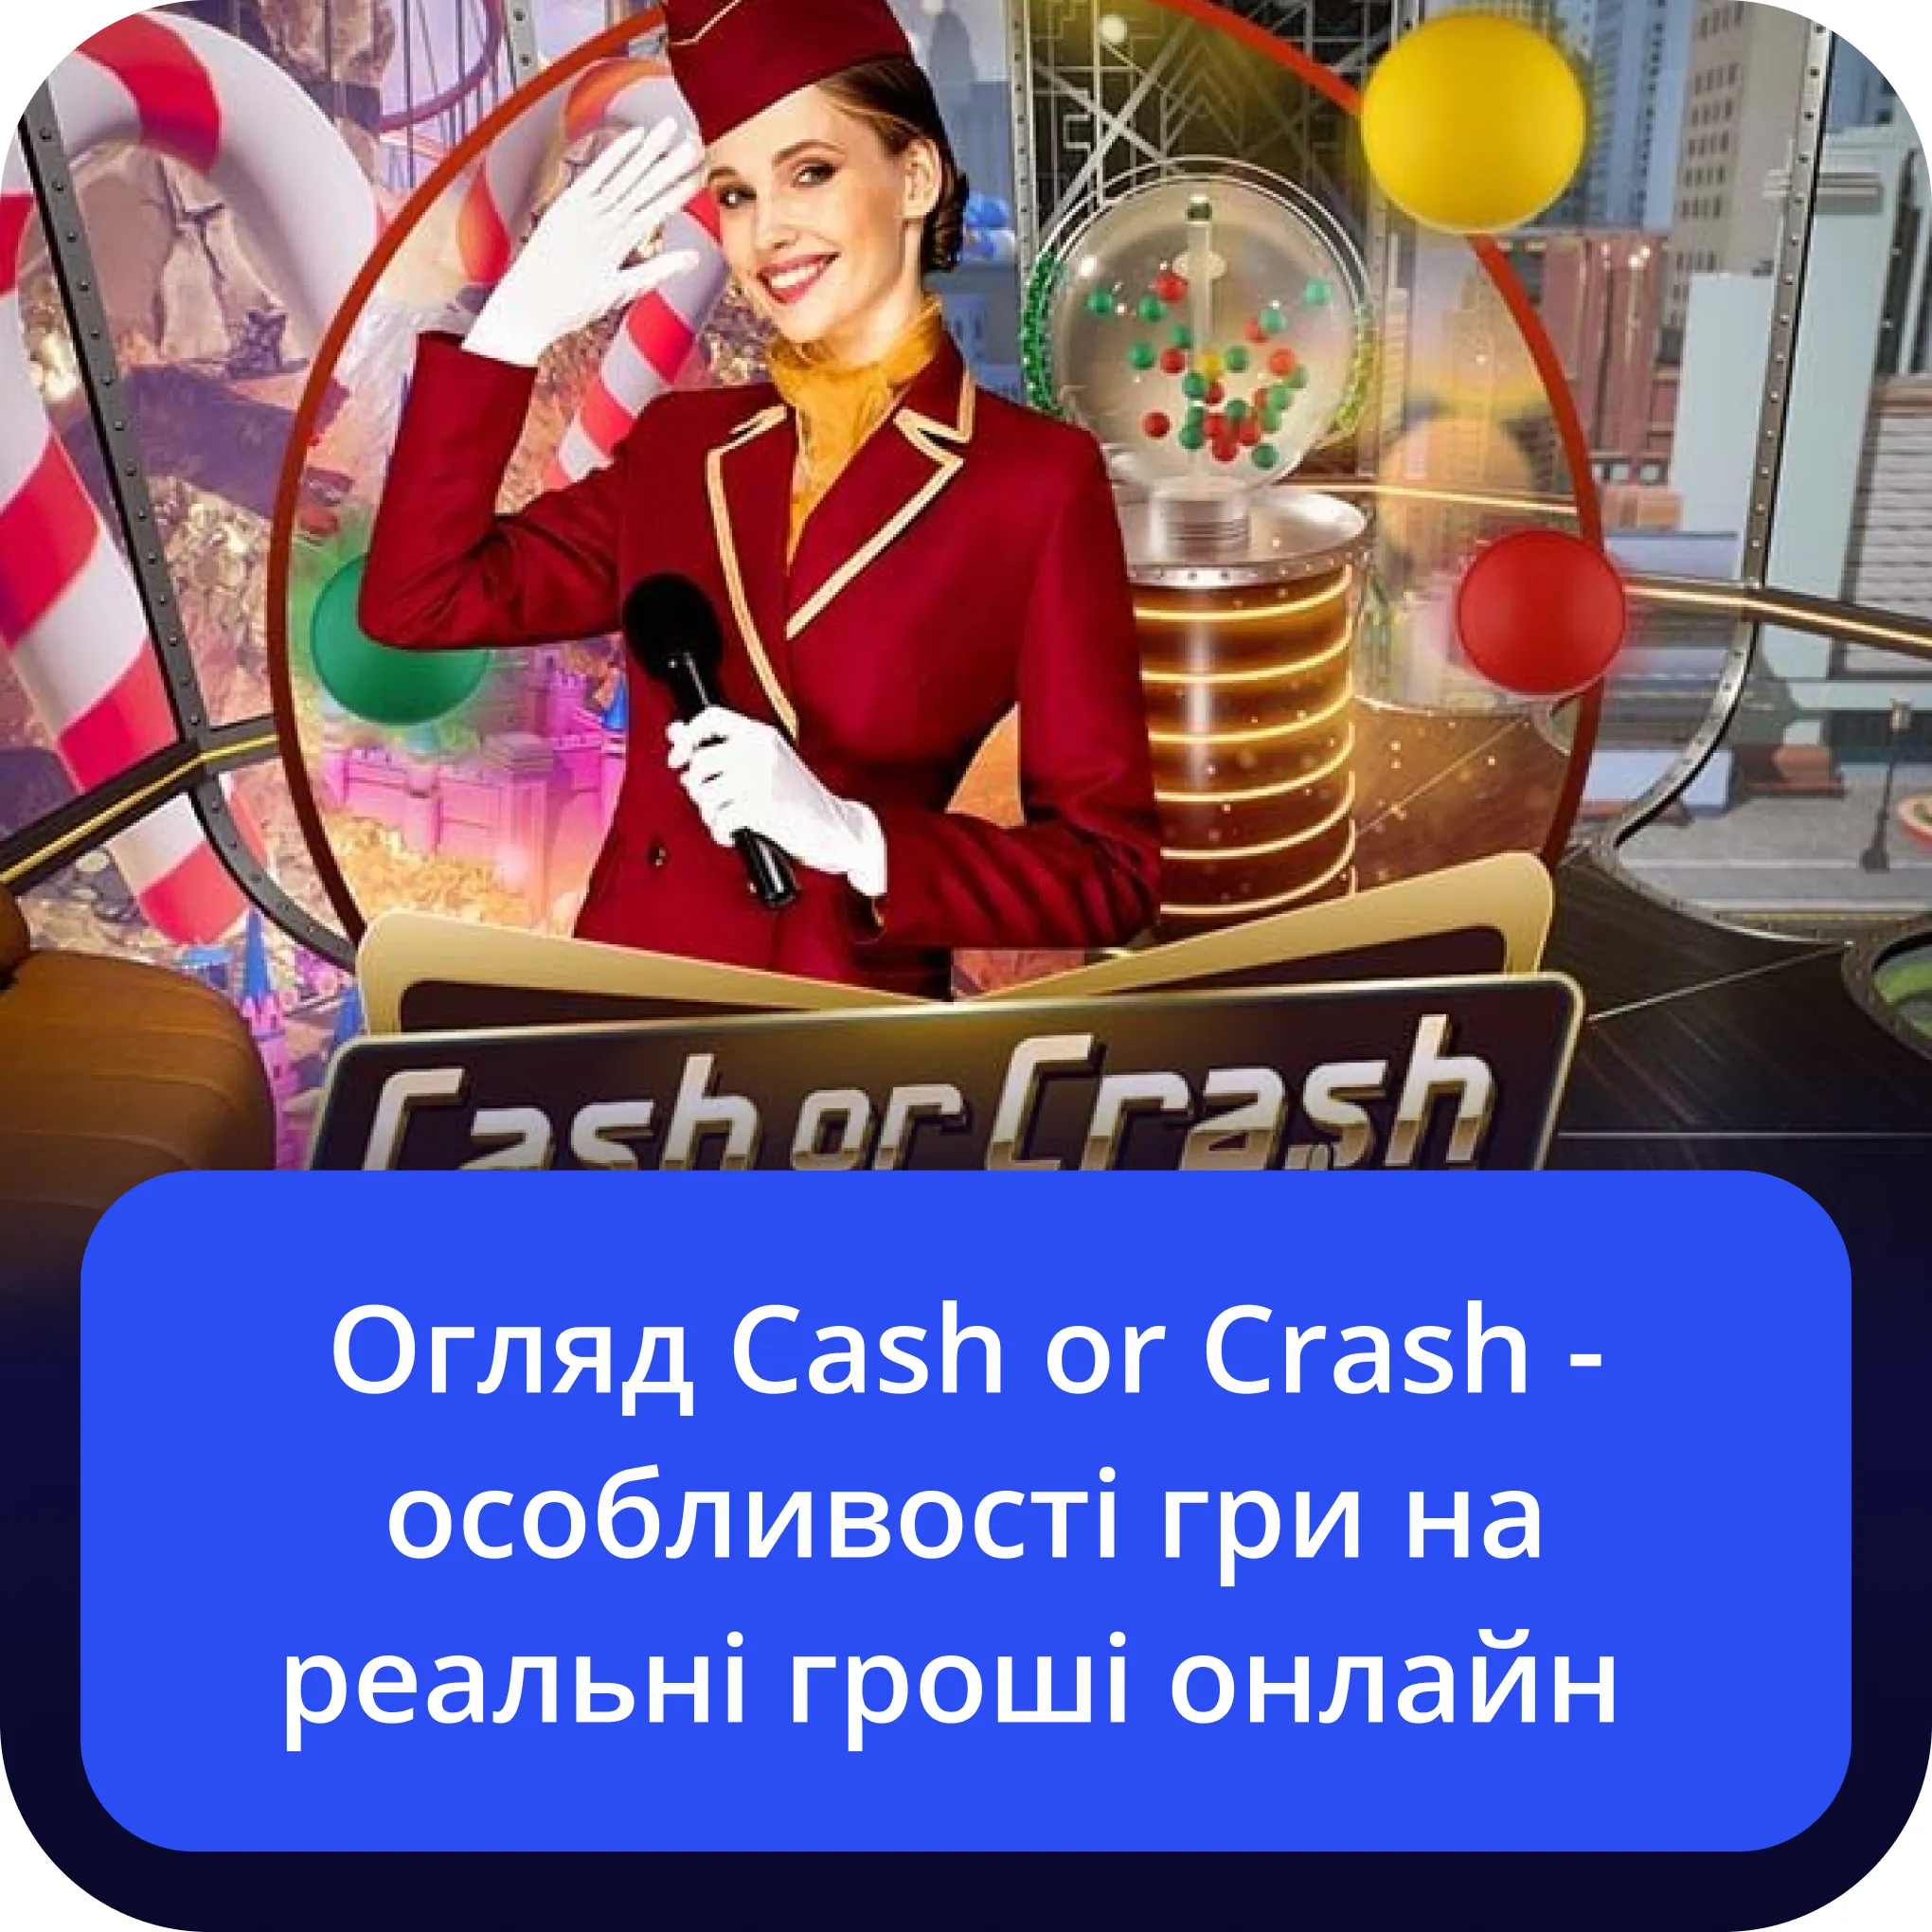 Огляд Cash or Crash